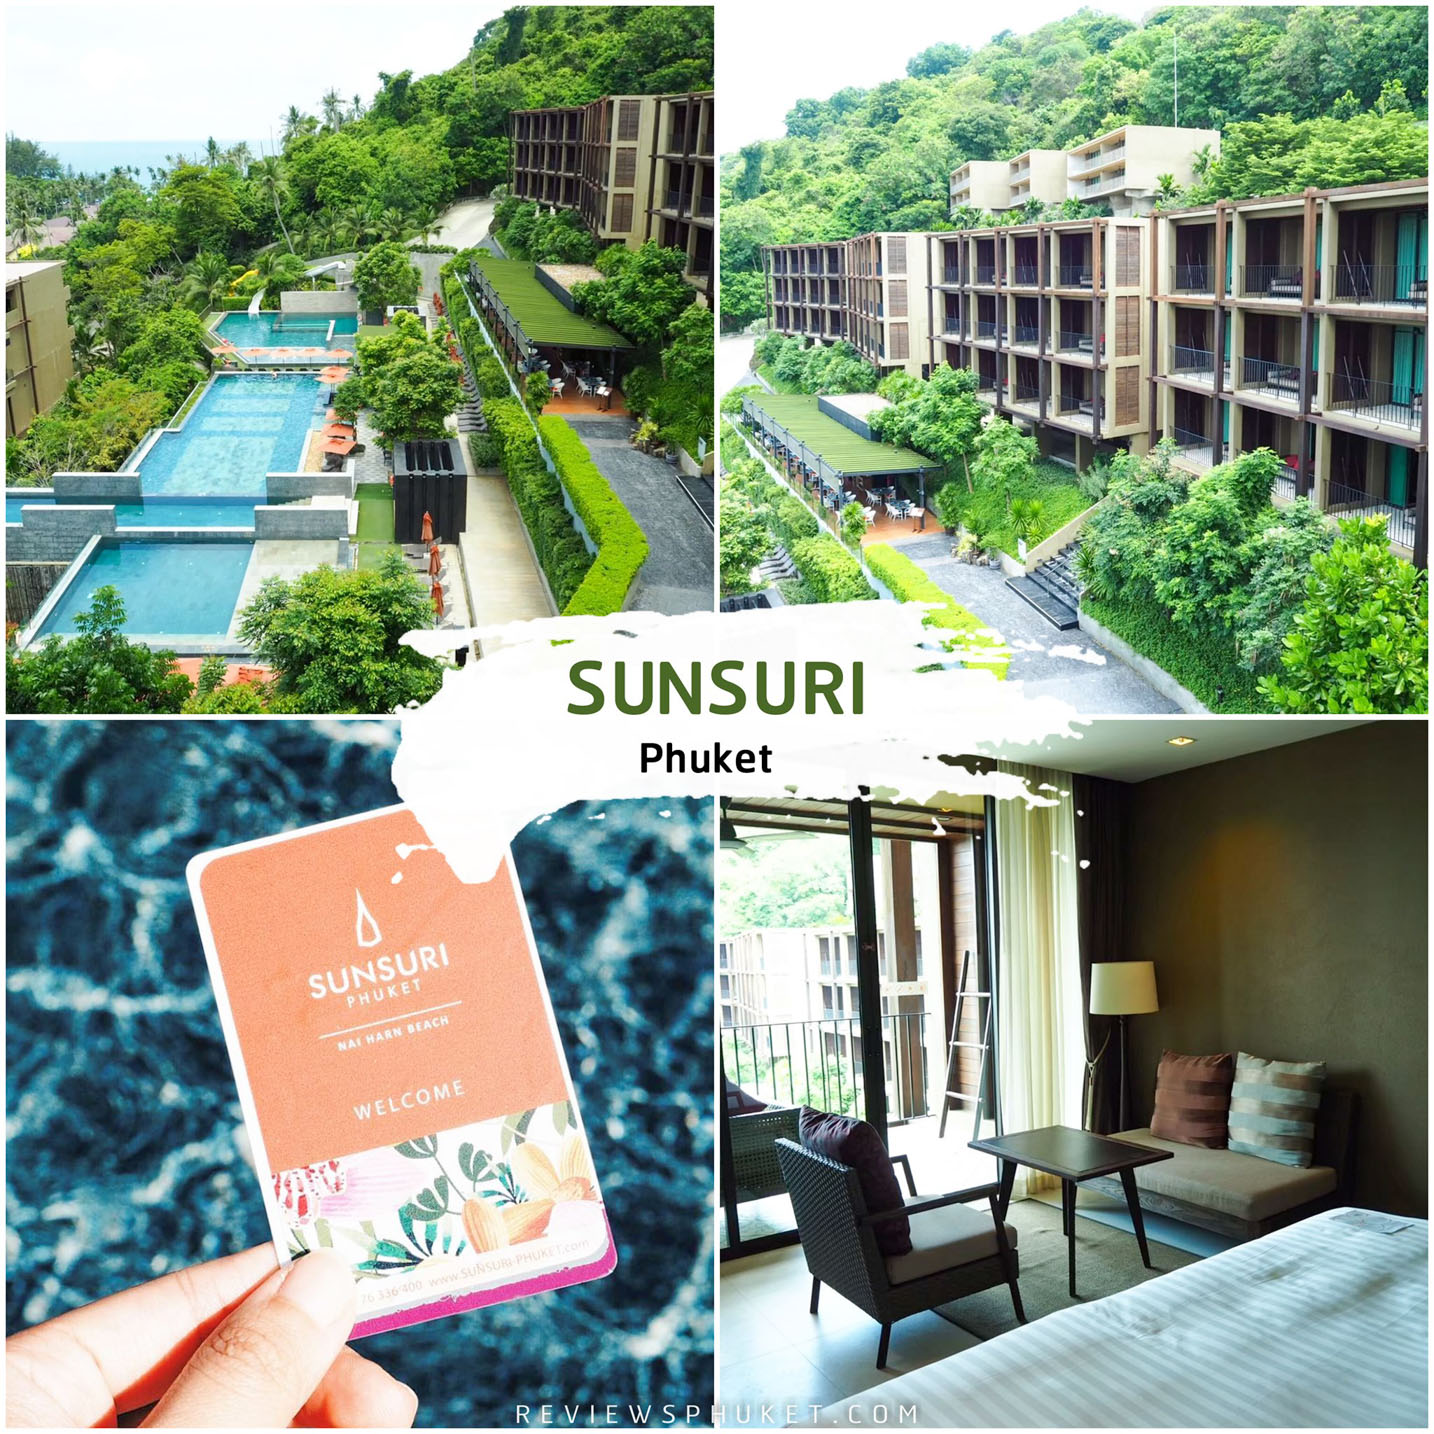 โรงแรมสันติ์สุริย์-ภูเก็ต --Sunsuri-Phuket-Hotel--ที่พักสุดสวยติดหาดในหาน-ที่พักออกแบบทรง-slope-ให้เห็นวิวทะเลอย่างสุดสวยแบบพาโนรามา-180-องศากันเลย-มีห้องพักทั้งหมด-130-ห้อง-และ-20-พูลวิลล่าให้เลือกเช็คอินกันตามชอบเลย-การออกแบบจะแนวสไตล์โมเดิร์นที่ยังมีกลิ่นไอความเป็๋นภูเก็ตดั้งเดิมด้วย-บอกเลยว่าปังง-สระว่ายน้ำของที่นี่คือยิ่งแบ่งแยกเป็นหลายสระ-สาวๆต้องชอบแน่นอน
 ที่พักภูเก็ต,ที่พักหรู,วิวหลักล้าน,ริมทะเล,โรงแรม,รีสอร์ท,Phuket,หาดสวย,น้ำใส